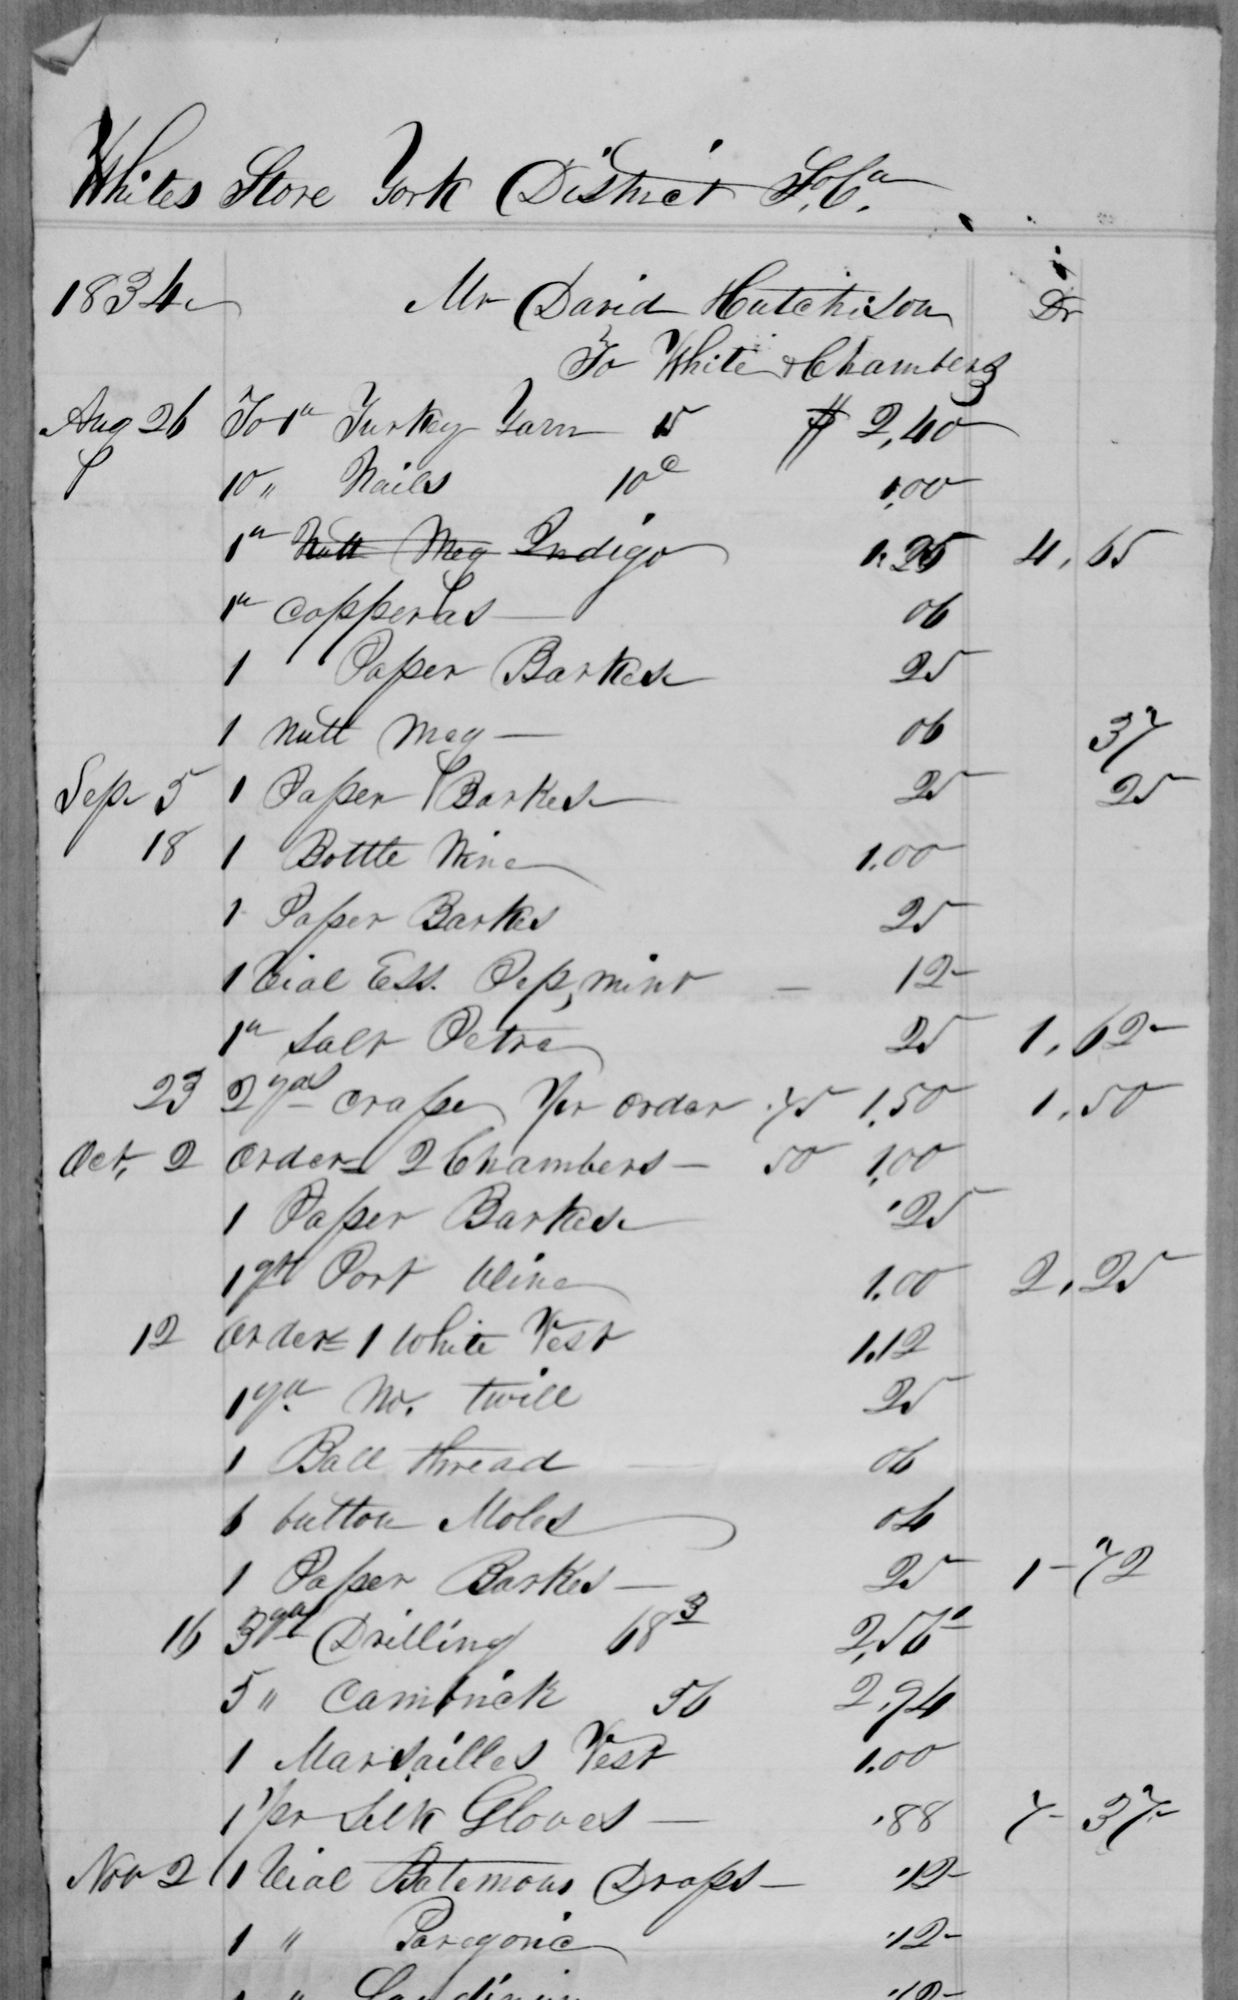 White's Store Account - 1834